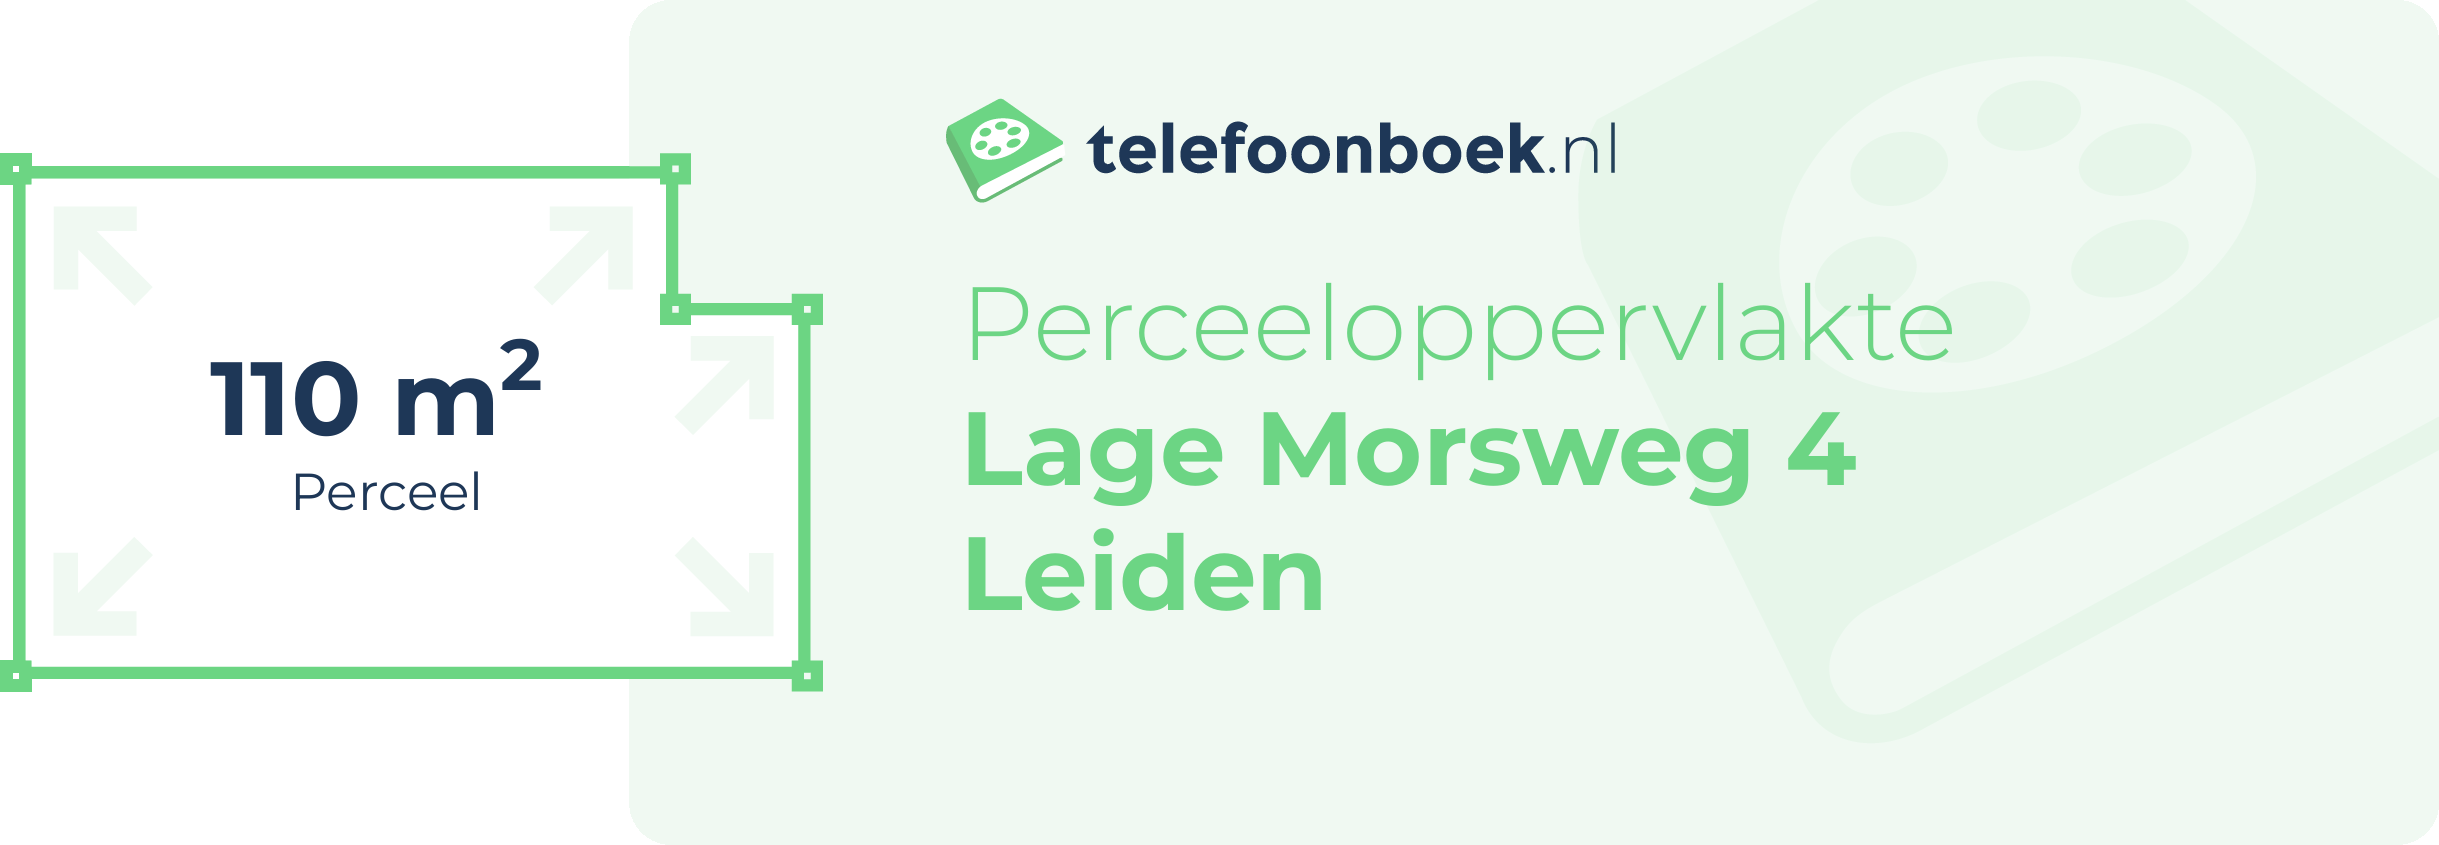 Perceeloppervlakte Lage Morsweg 4 Leiden